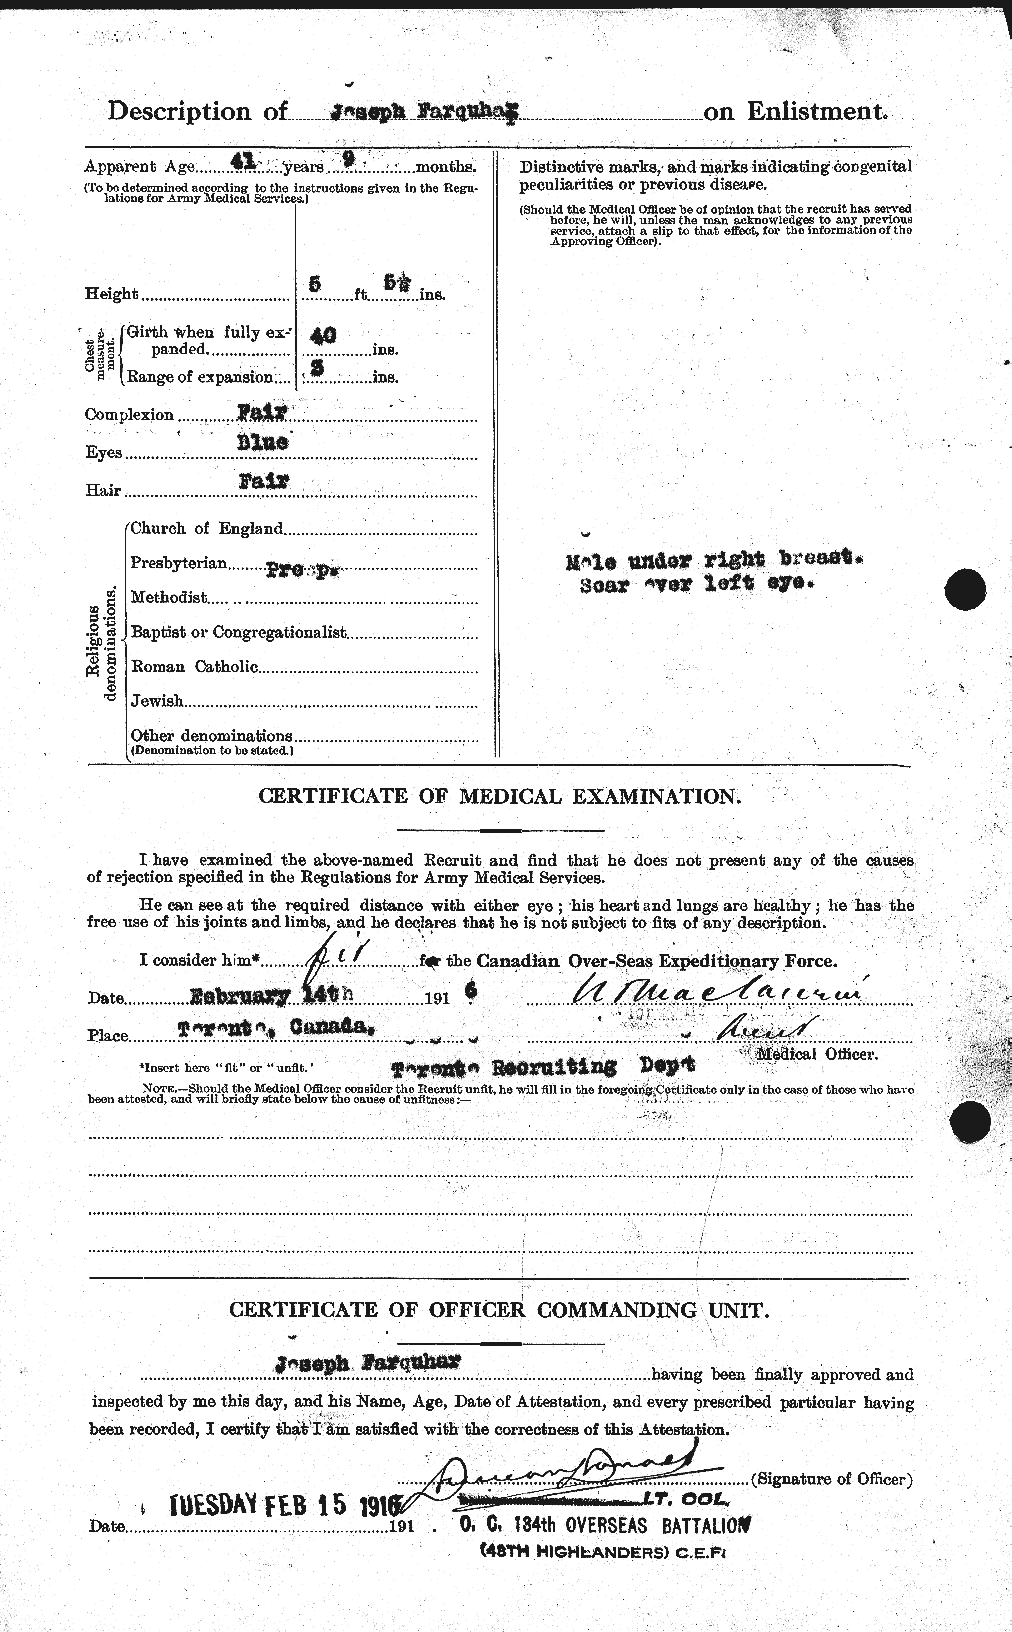 Dossiers du Personnel de la Première Guerre mondiale - CEC 318786b